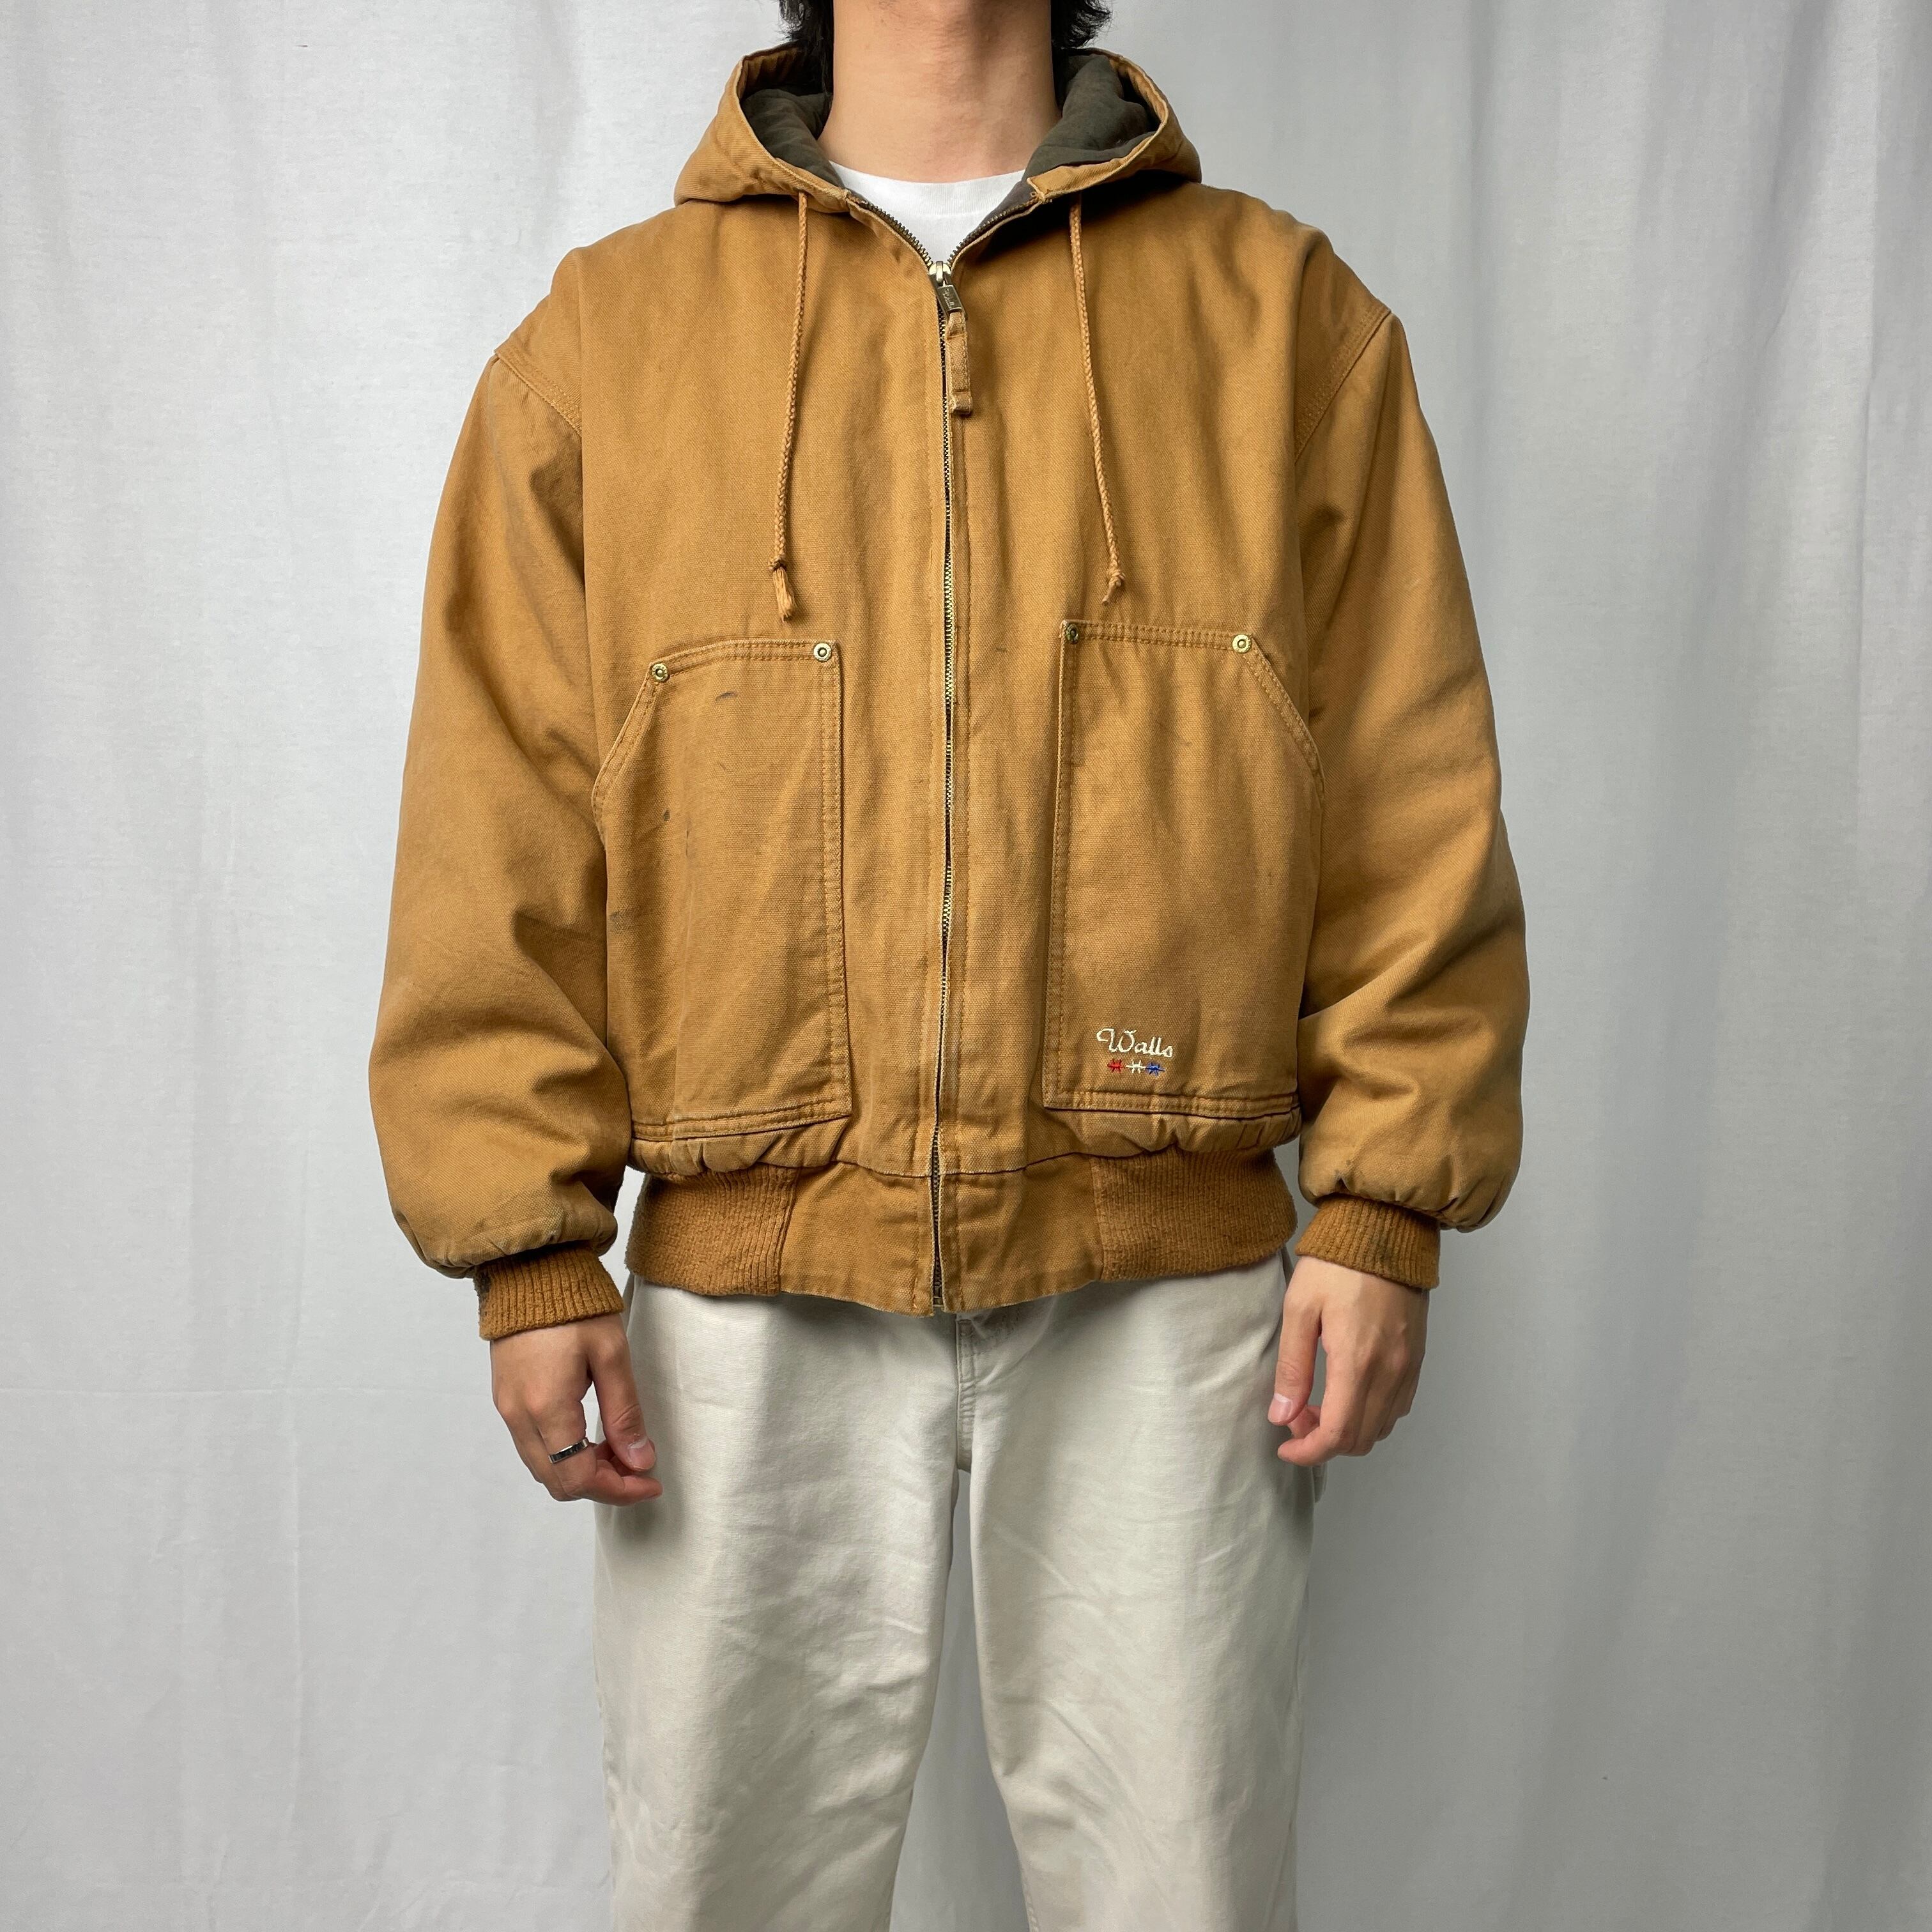 Walls duck jacket ネイビー 2XL オーバーサイズ